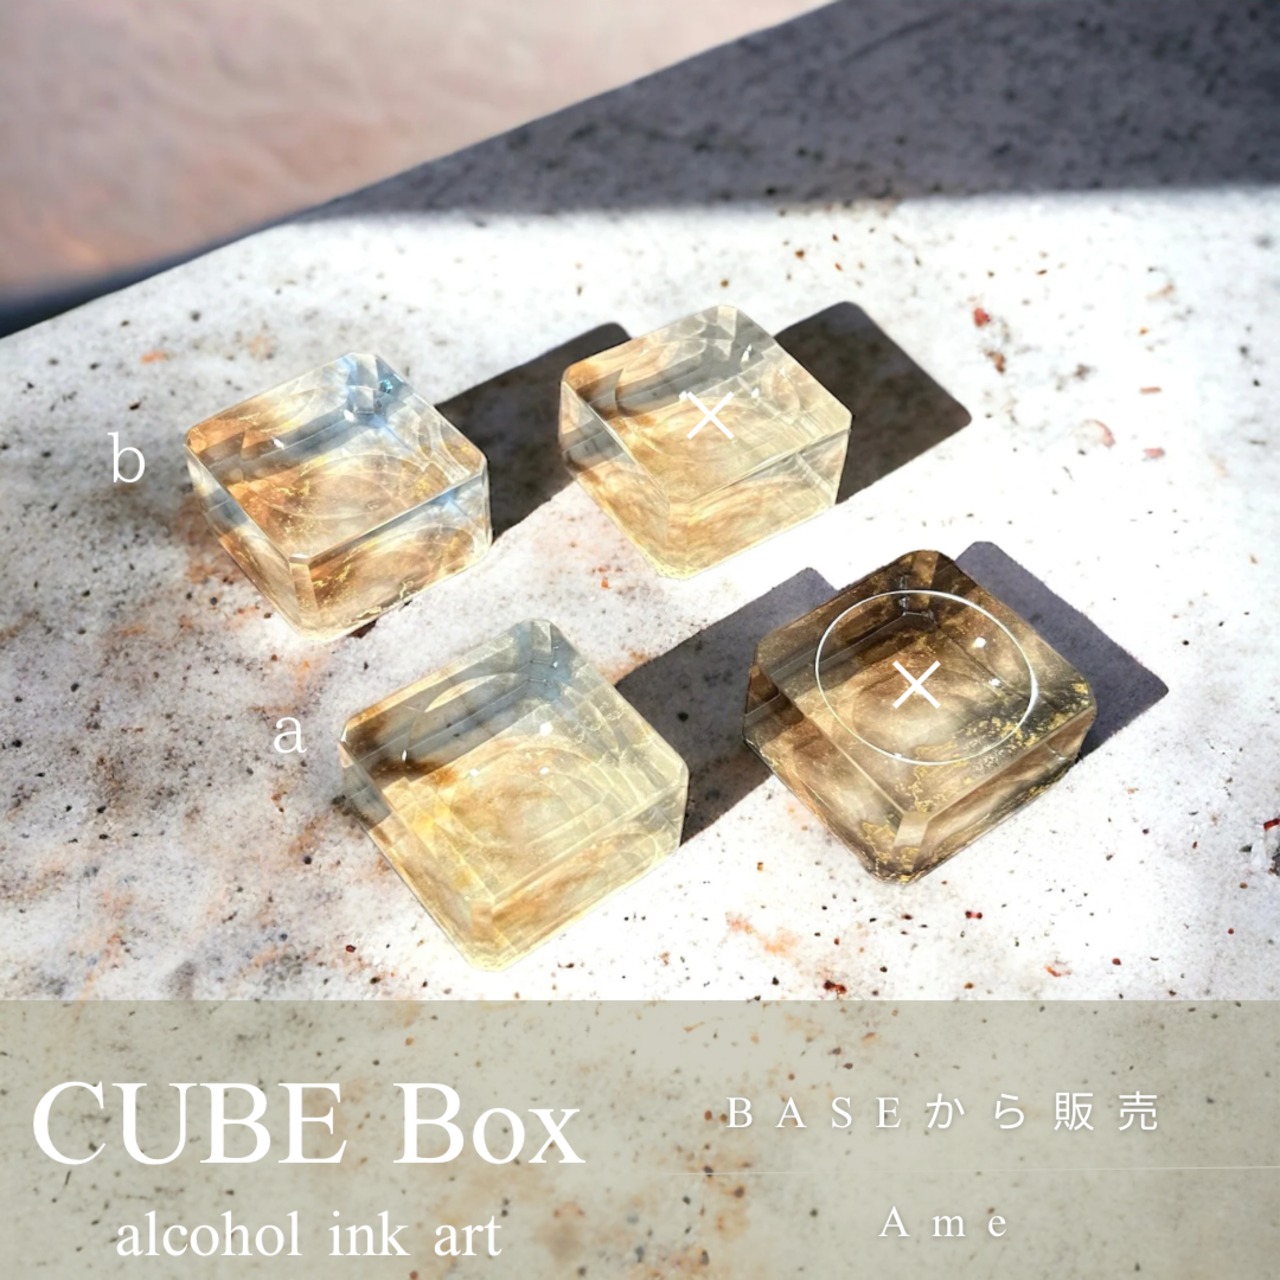 CUBE Box